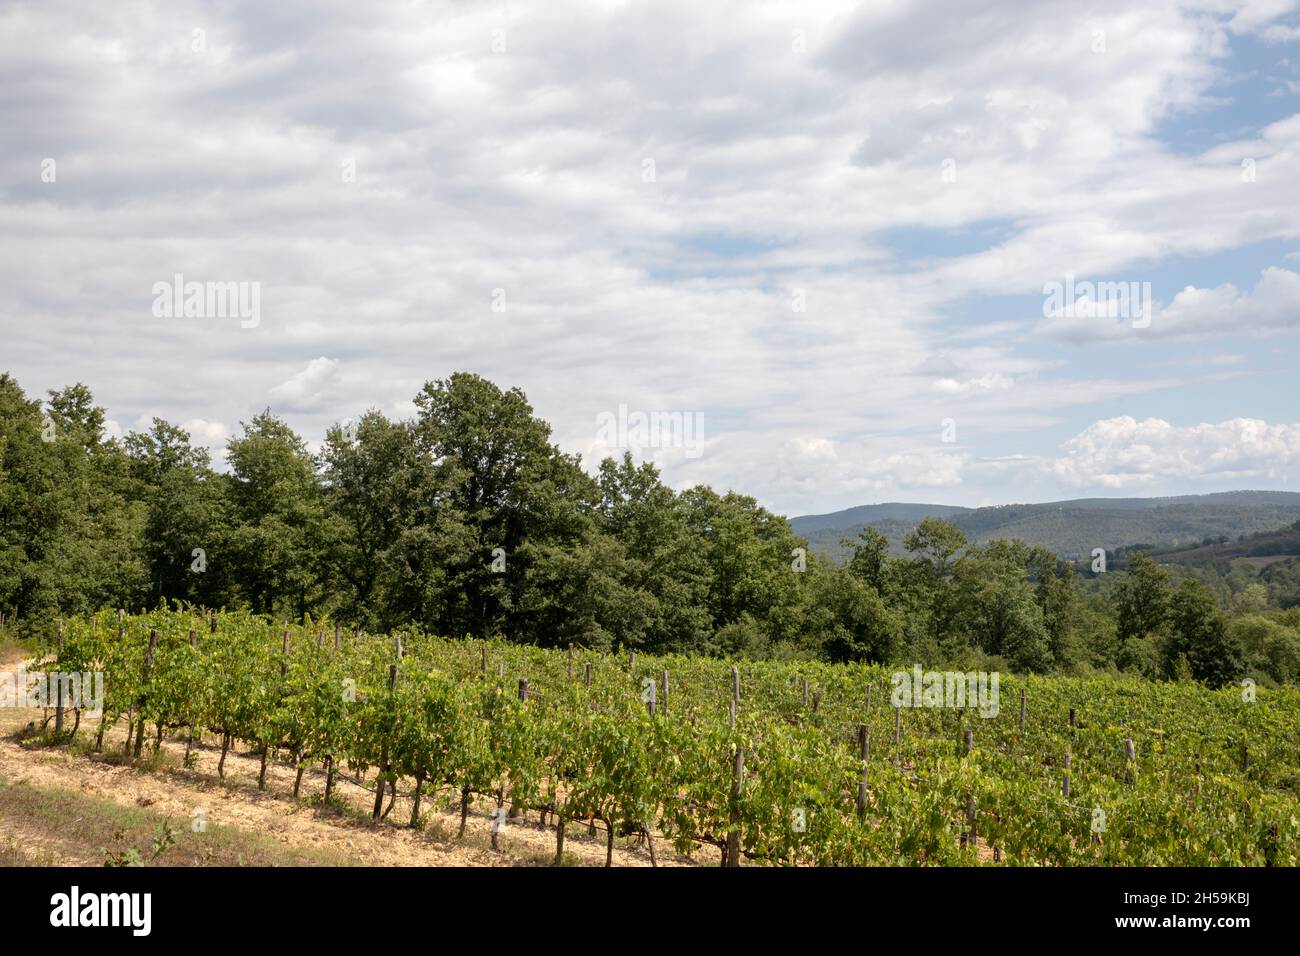 Vine cultivation near Abbazia San Galgano, Chiusdino, Siena, Tuscany, Italy Stock Photo